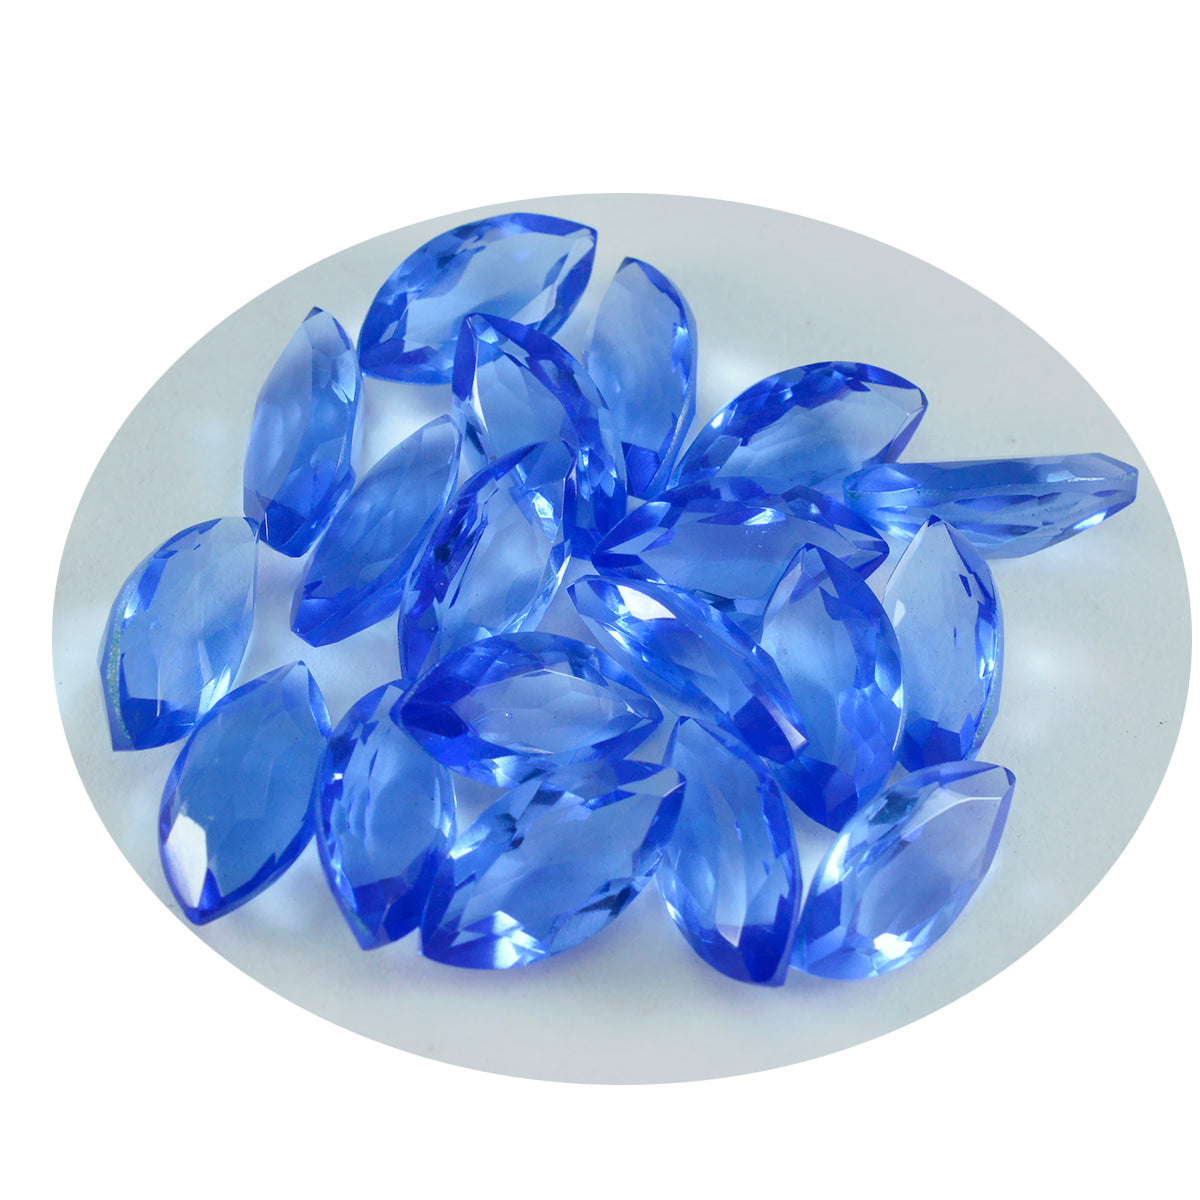 Riyogems 1 Stück blauer Saphir, CZ, facettiert, 6 x 12 mm, Marquise-Form, fantastischer Qualitäts-Edelstein